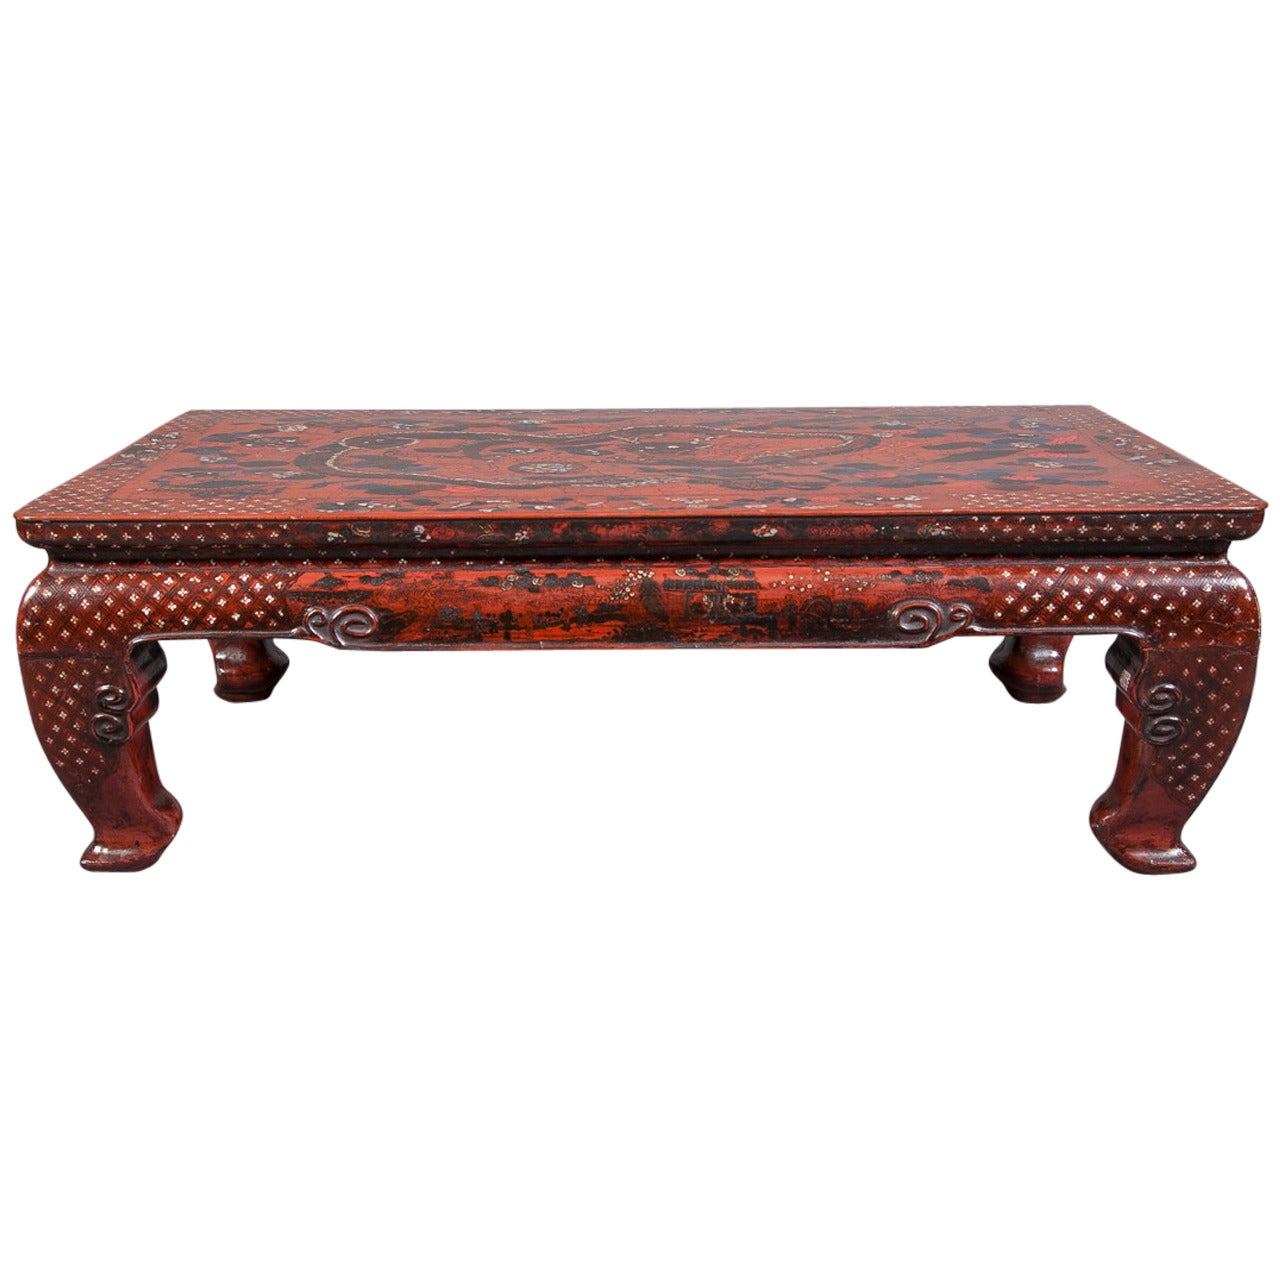 Chinesischer rot lackierter Tisch aus dem 18. Jahrhundert